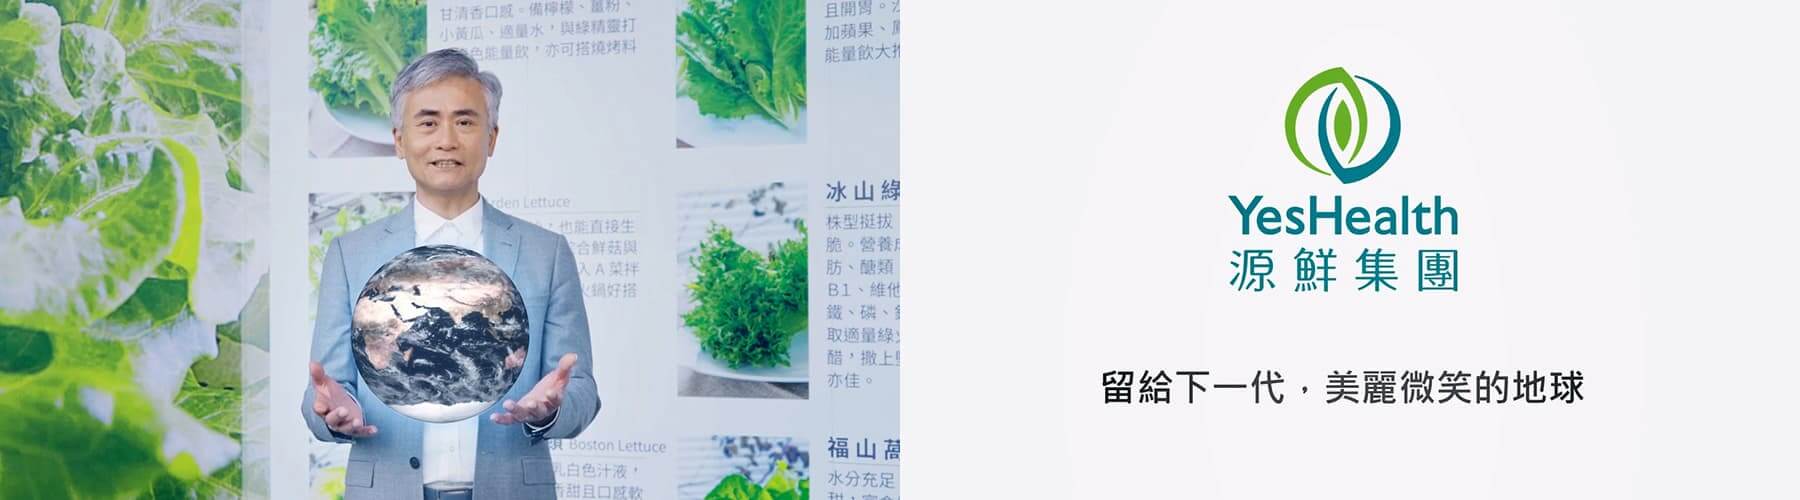 源鮮農業生物科技股份有限公司企業形象影片製作-4